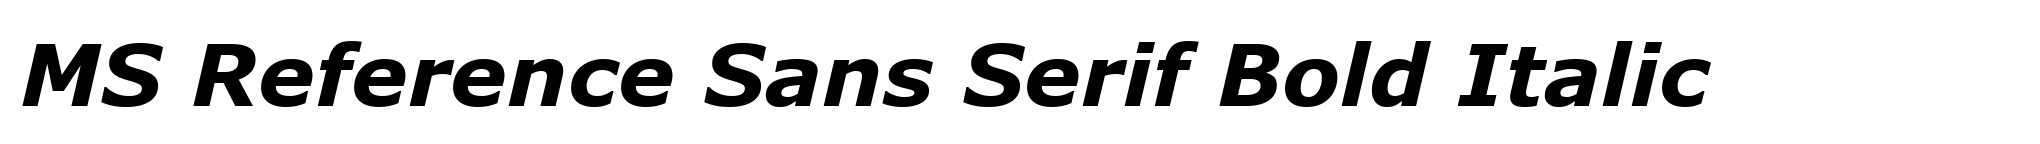 MS Reference Sans Serif Bold Italic image